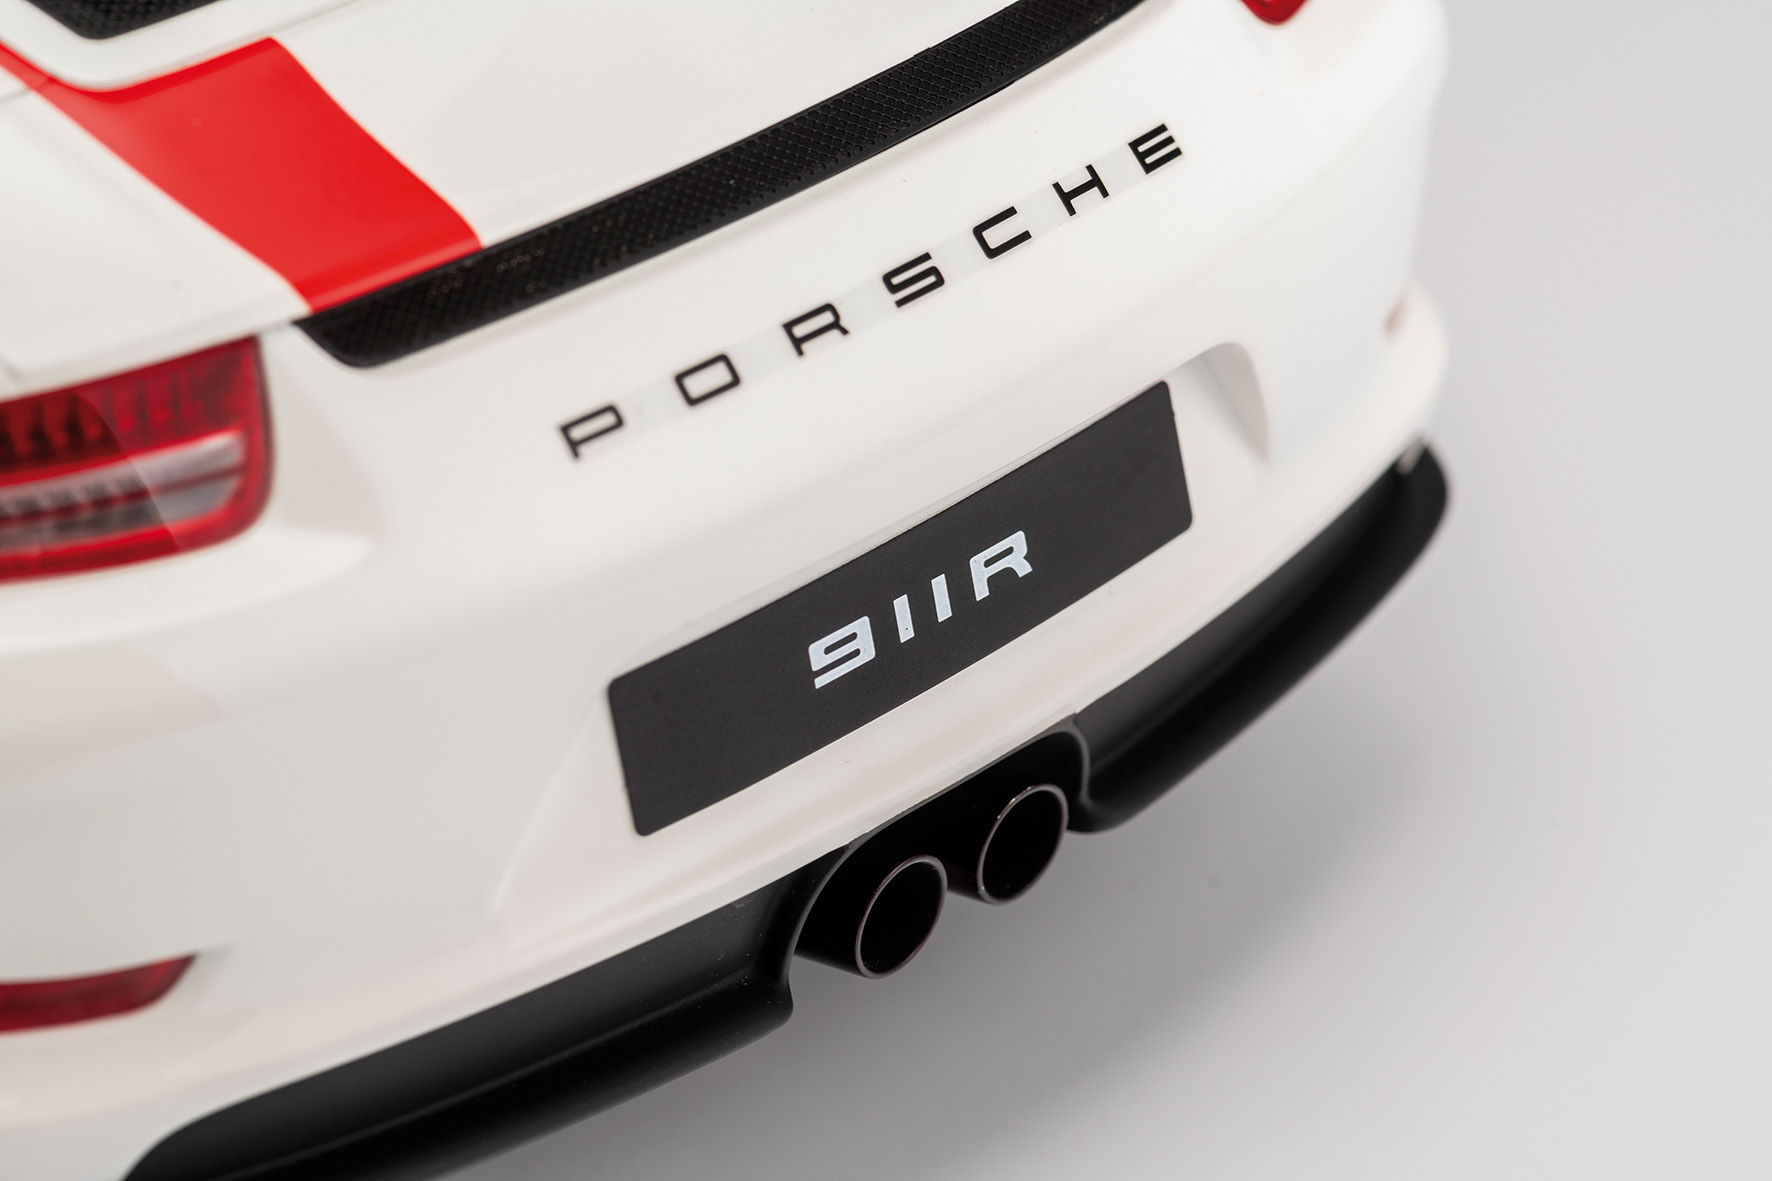 Porsche 911R 2016 1:8